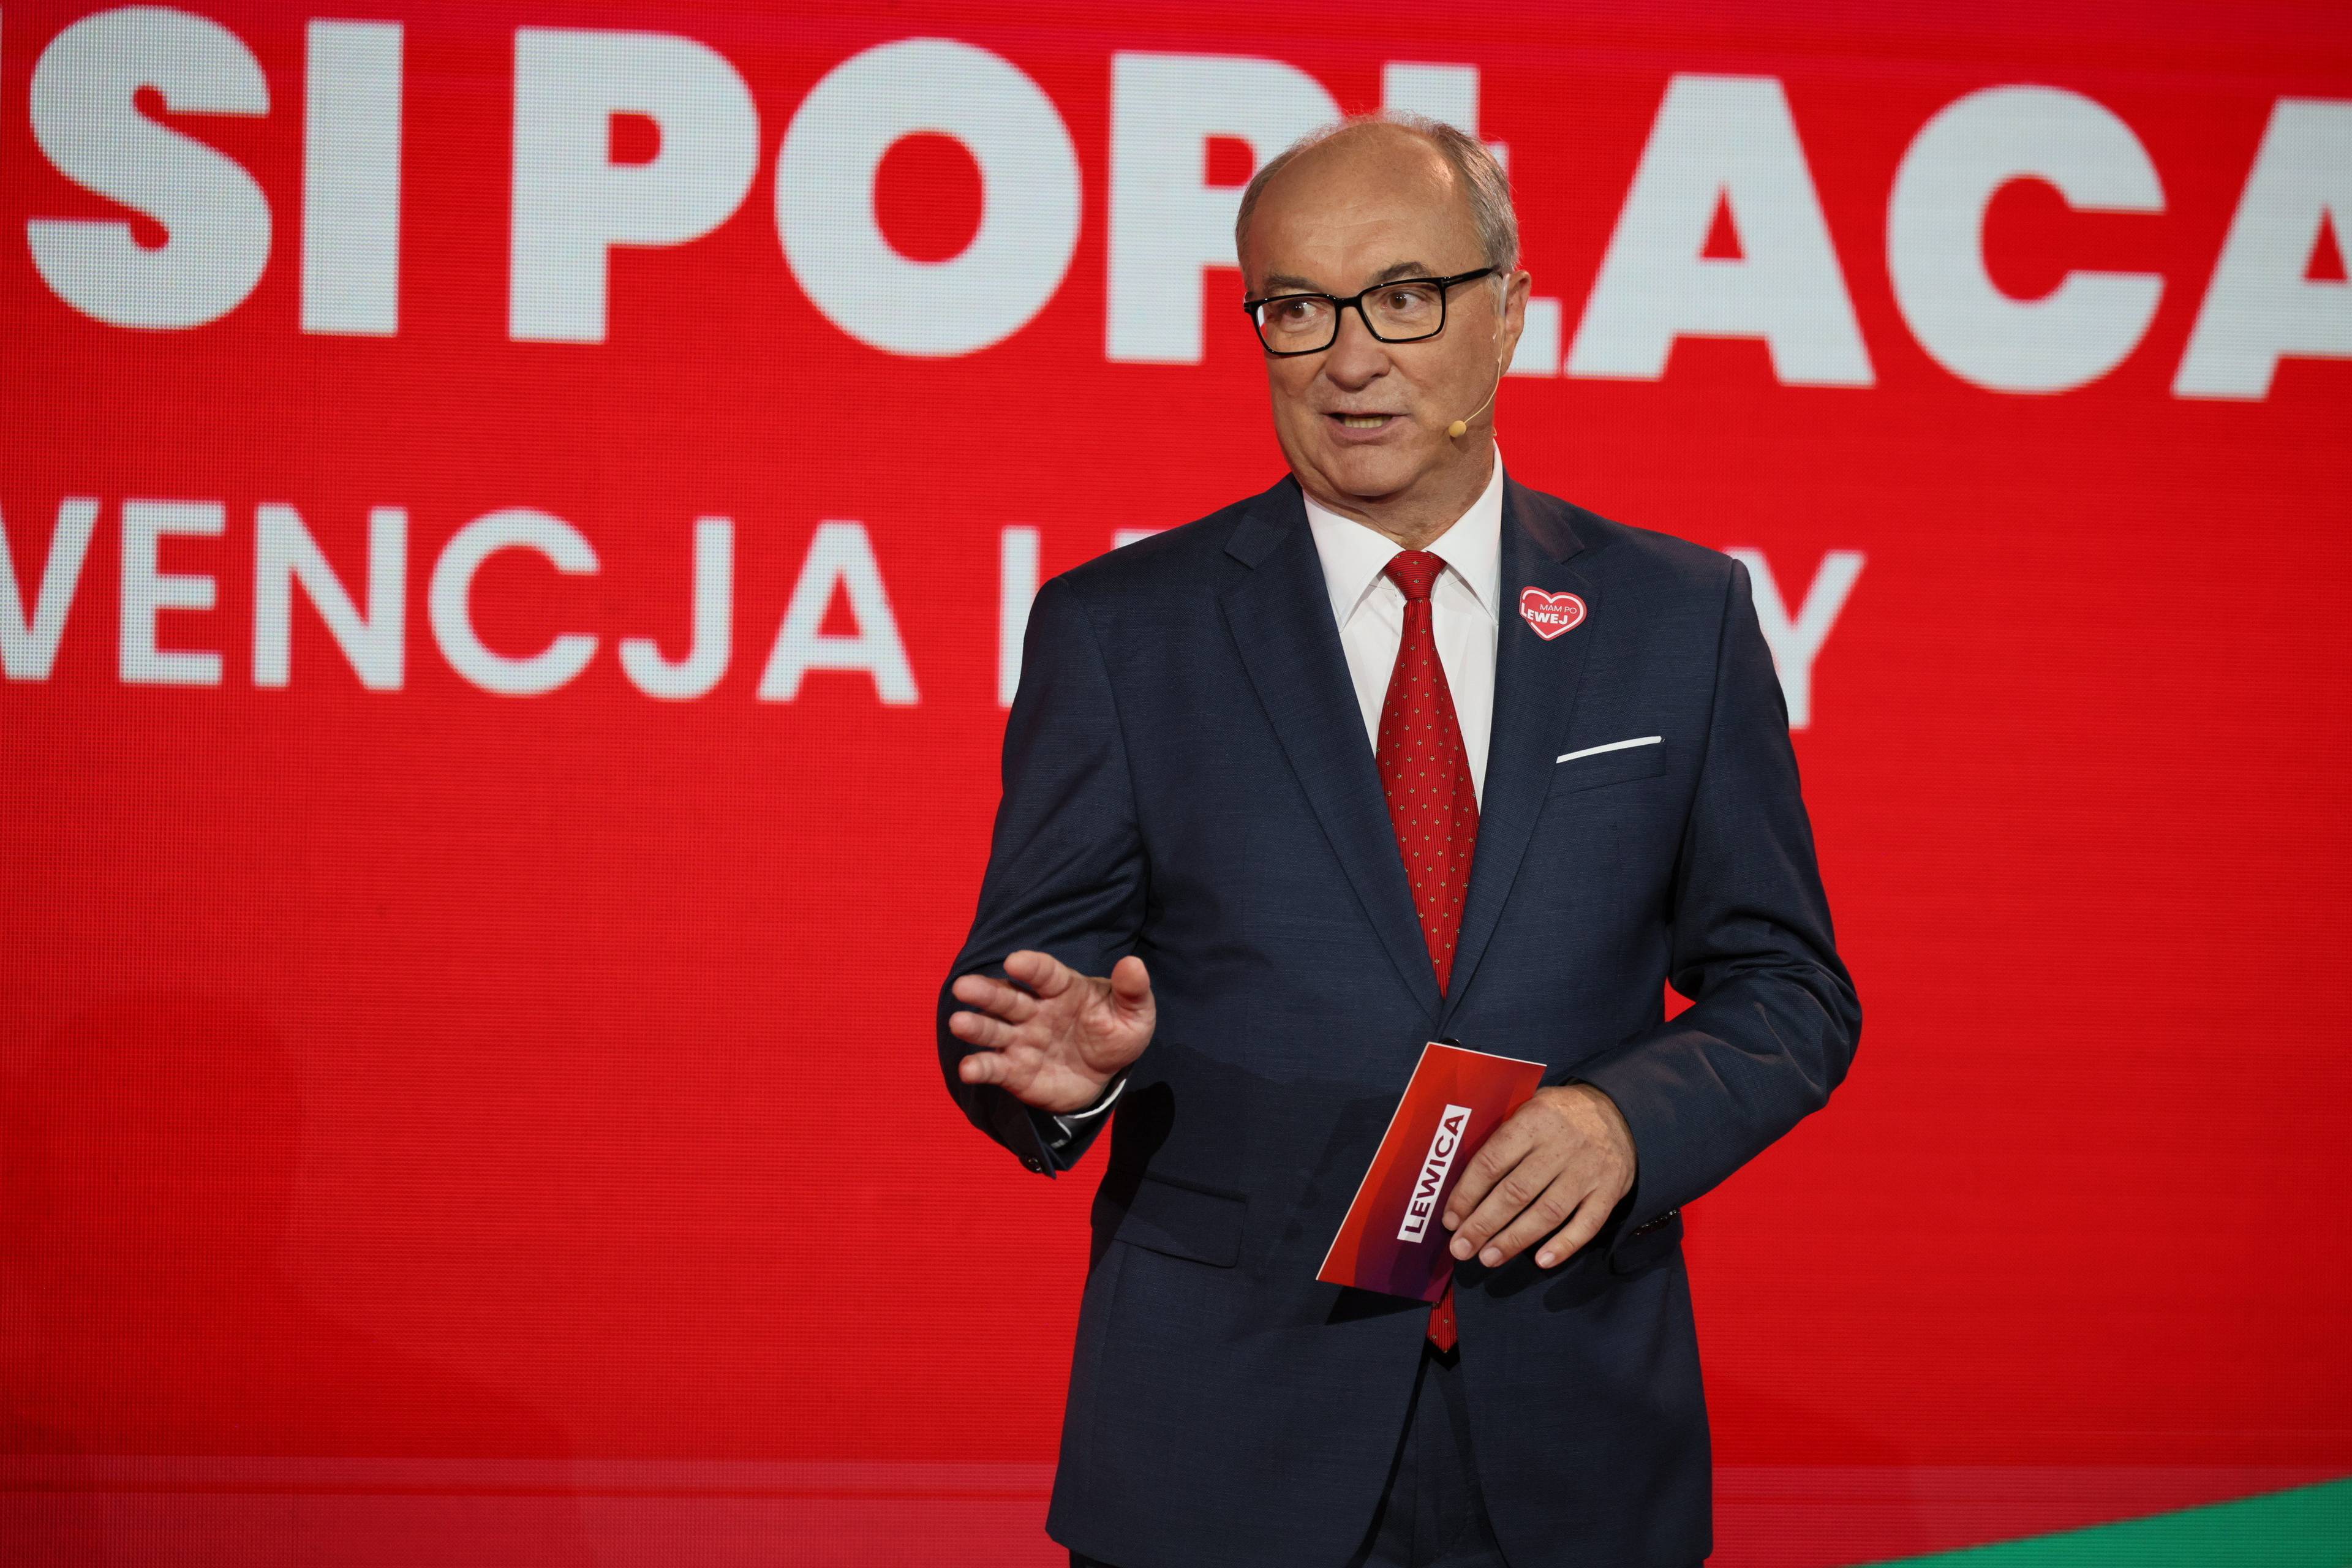 Współprzewodniczący Lewicy Włodzimierz Czarzasty przemawia na scenie na czerwonym tle z wyciągniętą do przodu prawą ręką